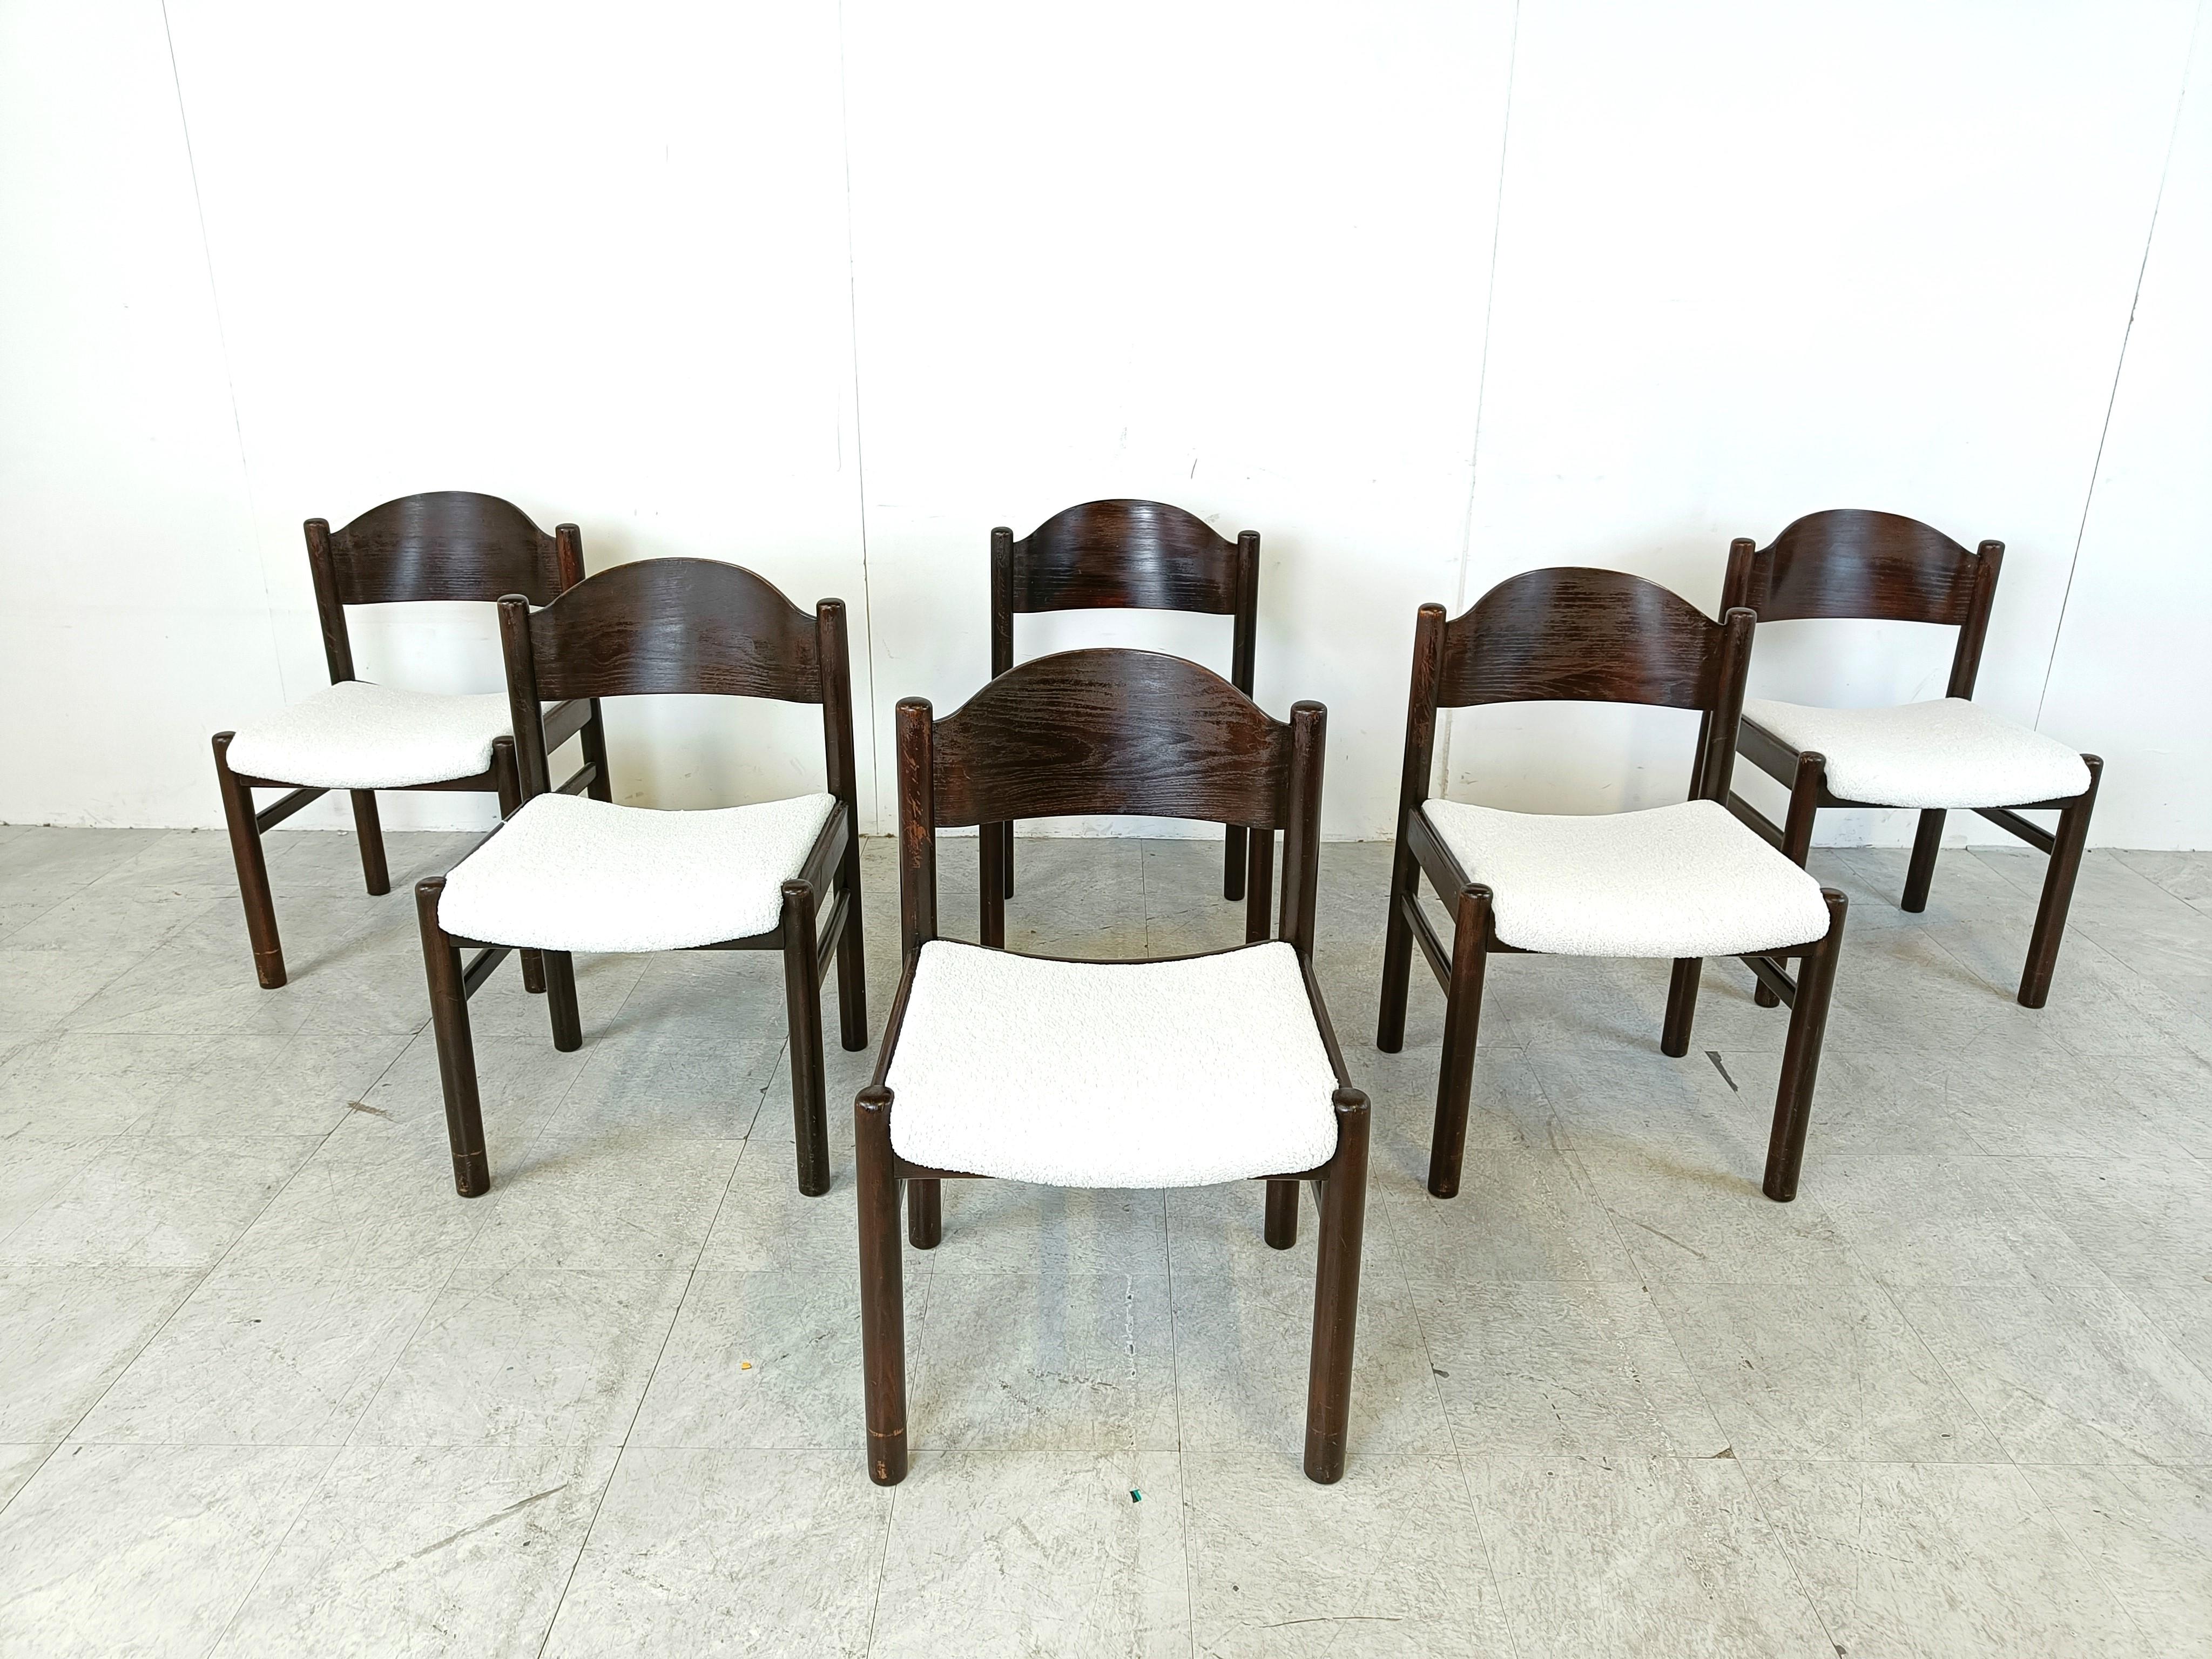 Brutalist Vintage brutalist dining chairs, set of 6 - 1960s